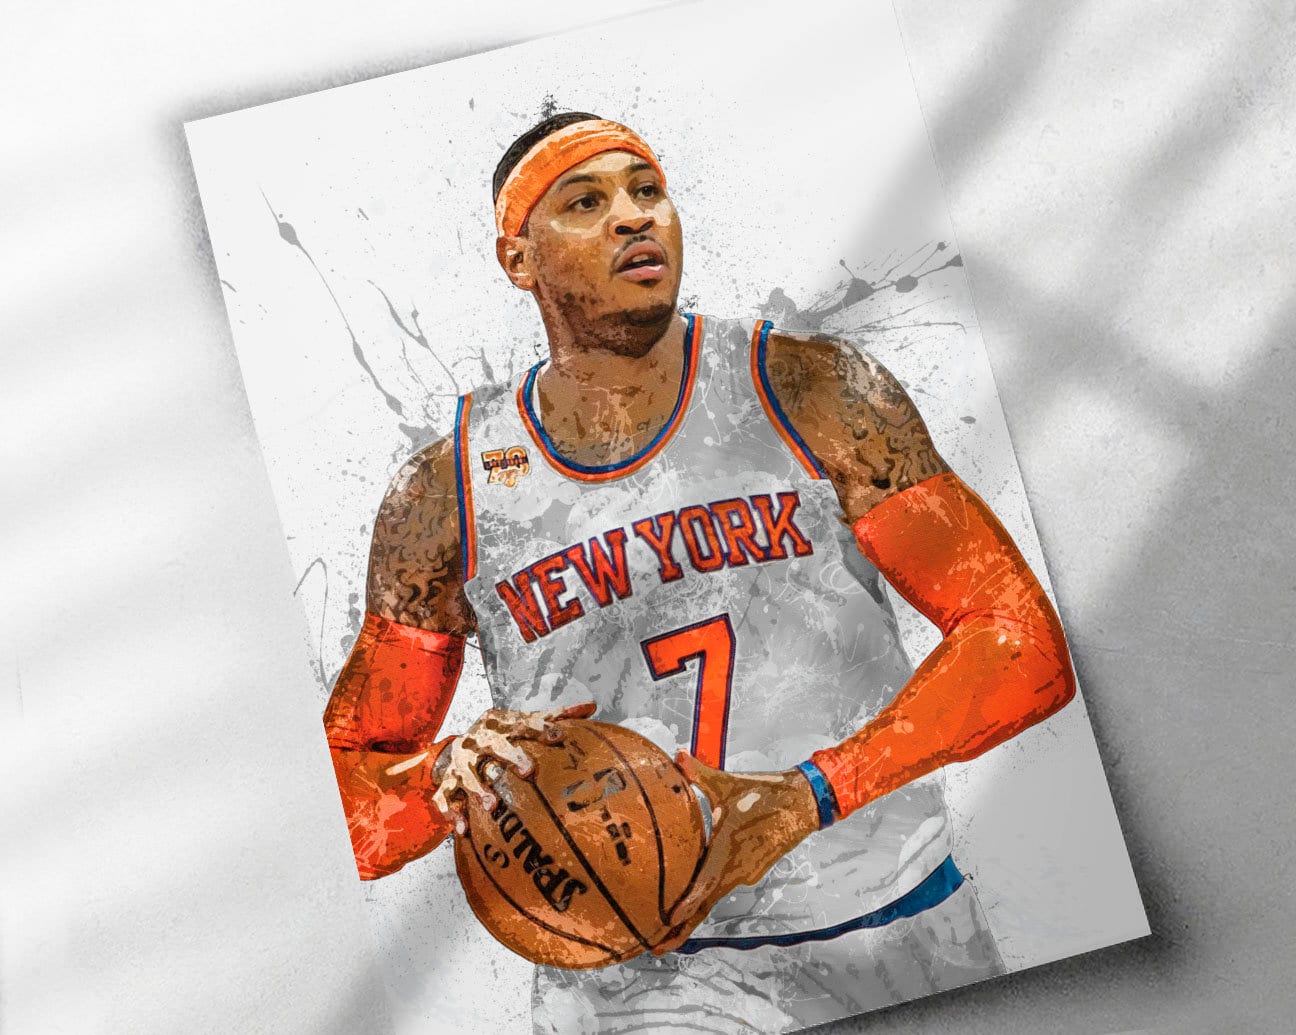 Download Carmelo Anthony Knicks 7 Fanart Wallpaper